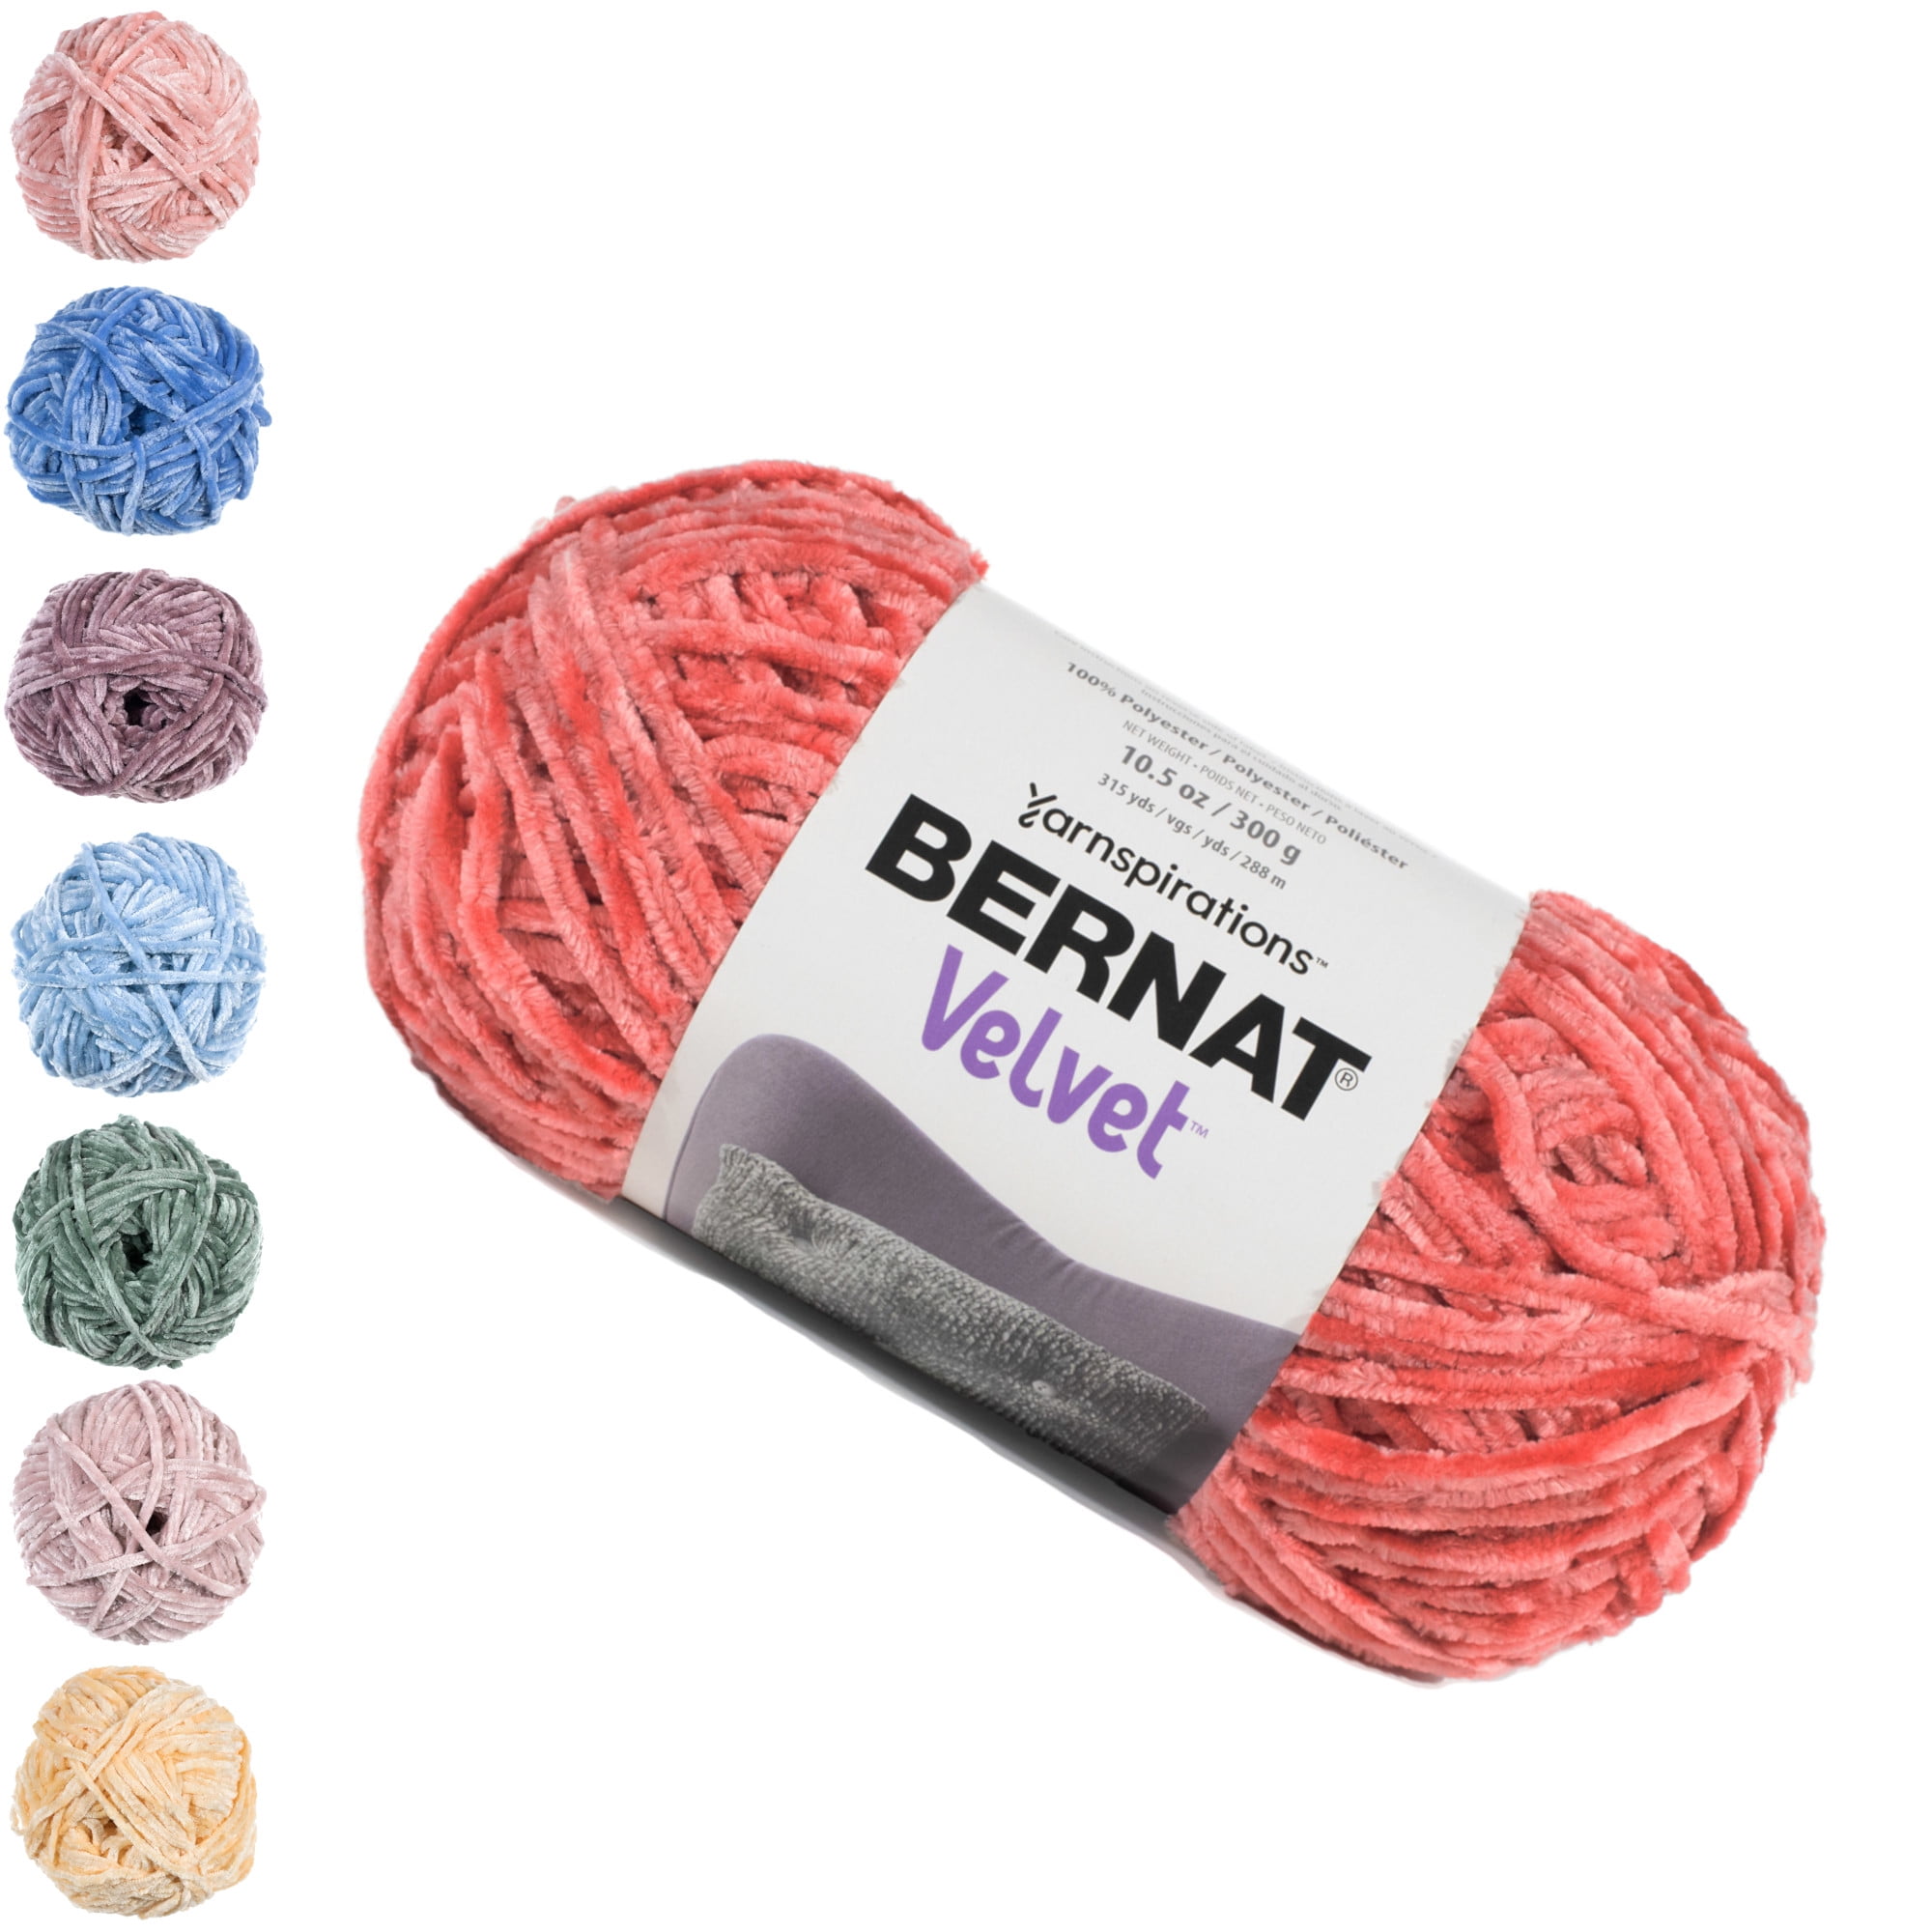 Bernat Velvet Blush Pink Yarn - 2 Pack of 300g/10.5oz - Polyester - 5 Bulky  - 315 Yards - Knitting/Crochet